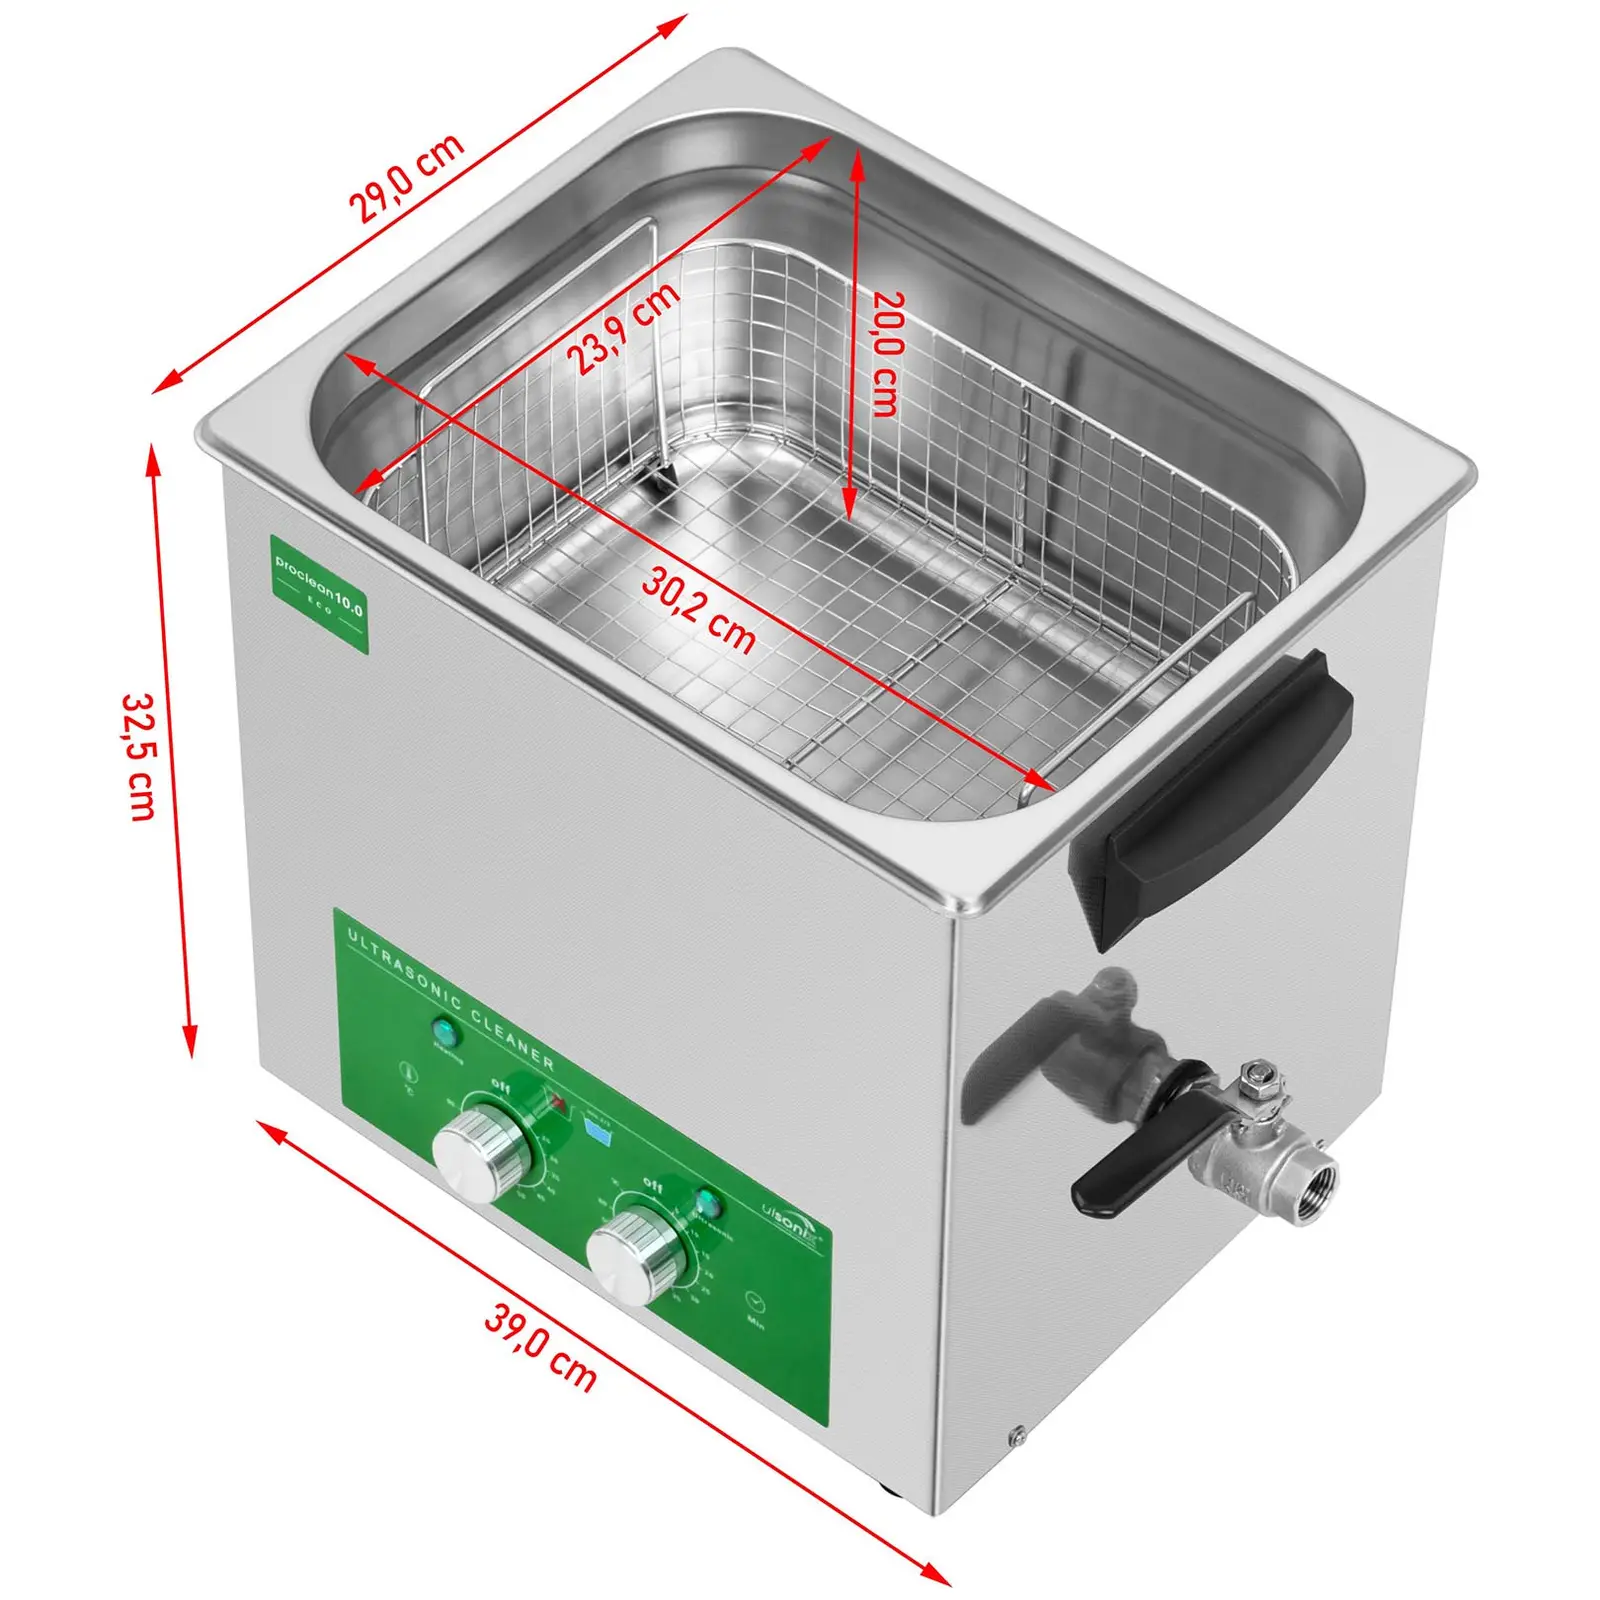 Ultrahangso tisztító - 10 liter - 180 W - Eco